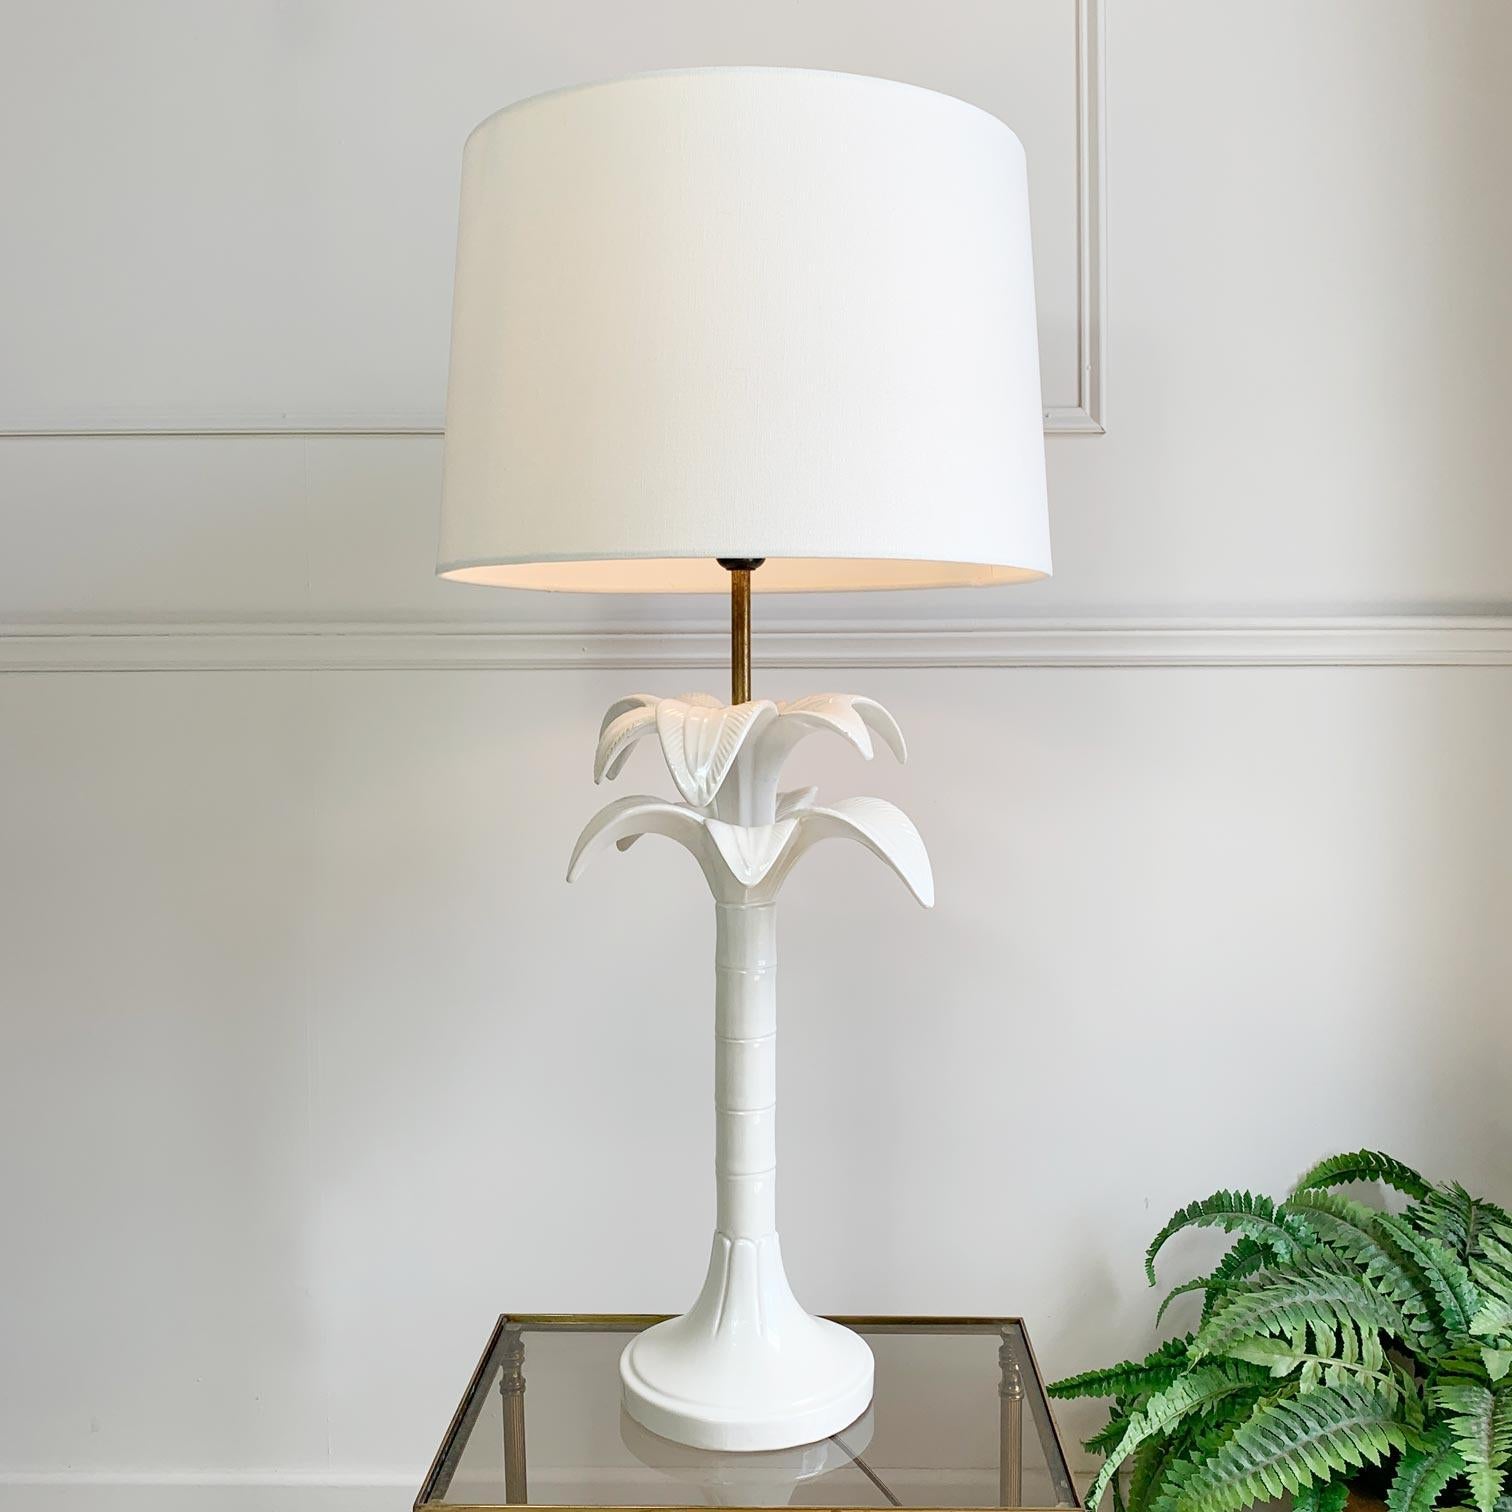 Wunderschöne Lampe aus perlmuttweißer Keramik von Tommaso Barbi, um 1970, Italien. In Form einer Palme mit Blatt- und Stammdekoration. Sie kann mit einer E27-Glühbirne (große Schraubbirne) betrieben werden und wird mit einem modernen